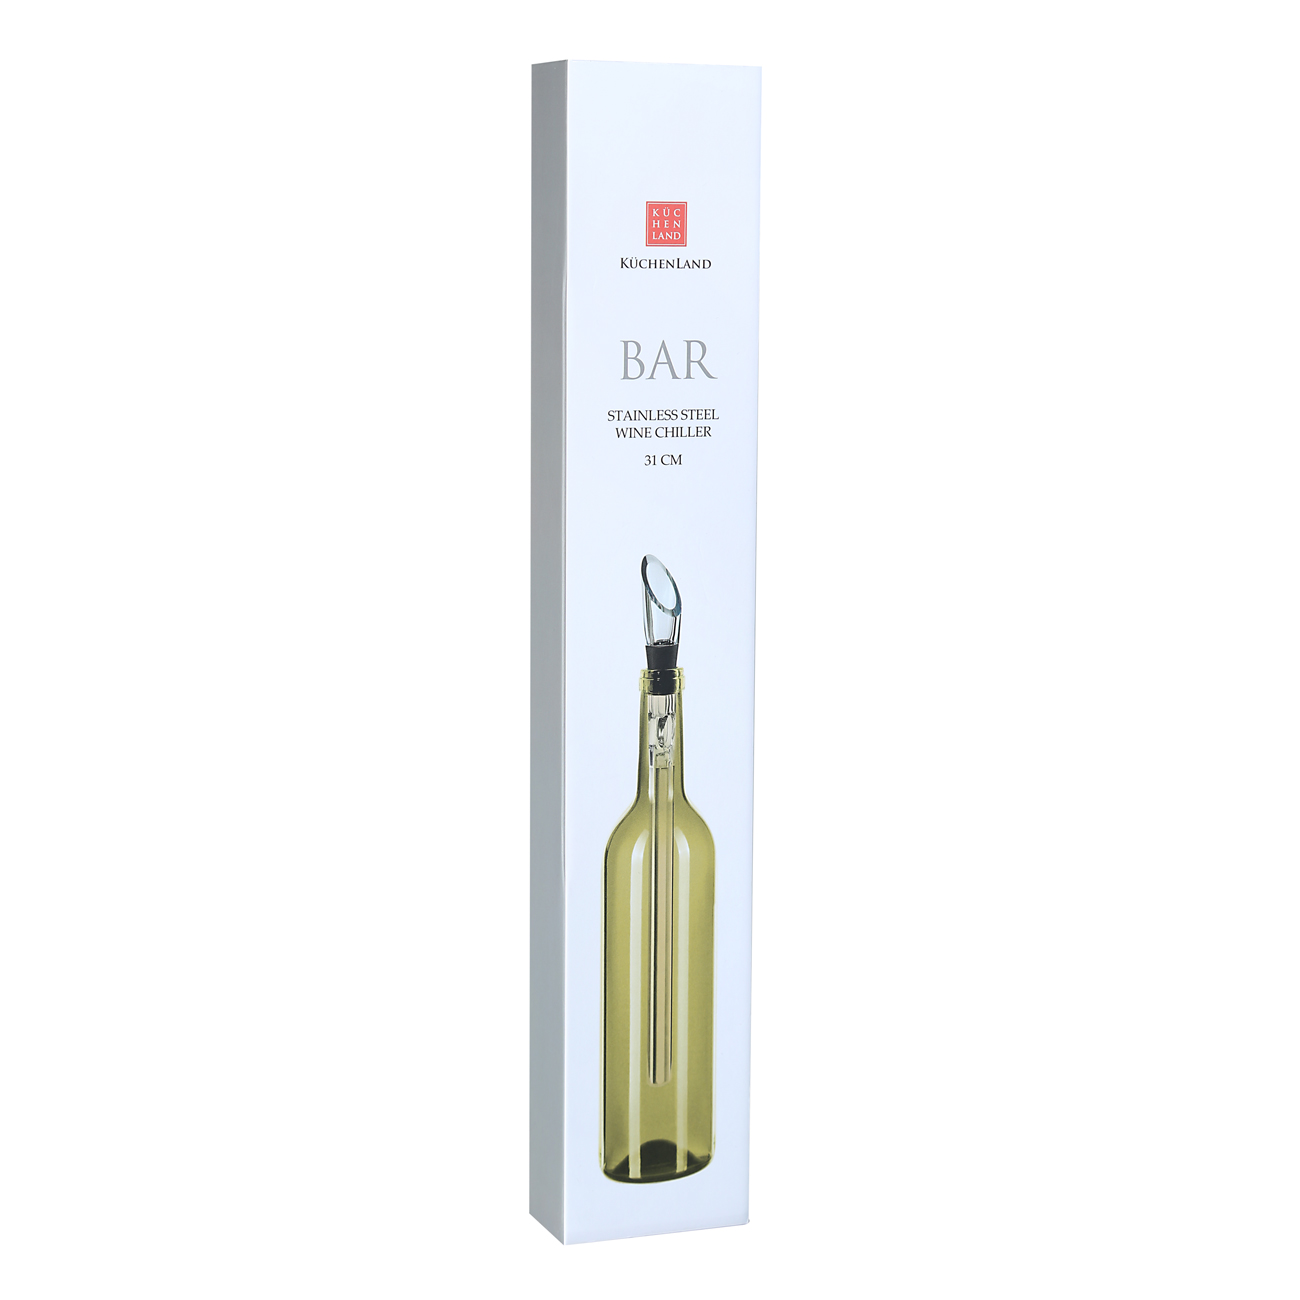 Wine Bottle Cooler-Dispenser, 33 cm, Steel/Plastic/Silicon, Bar изображение № 2